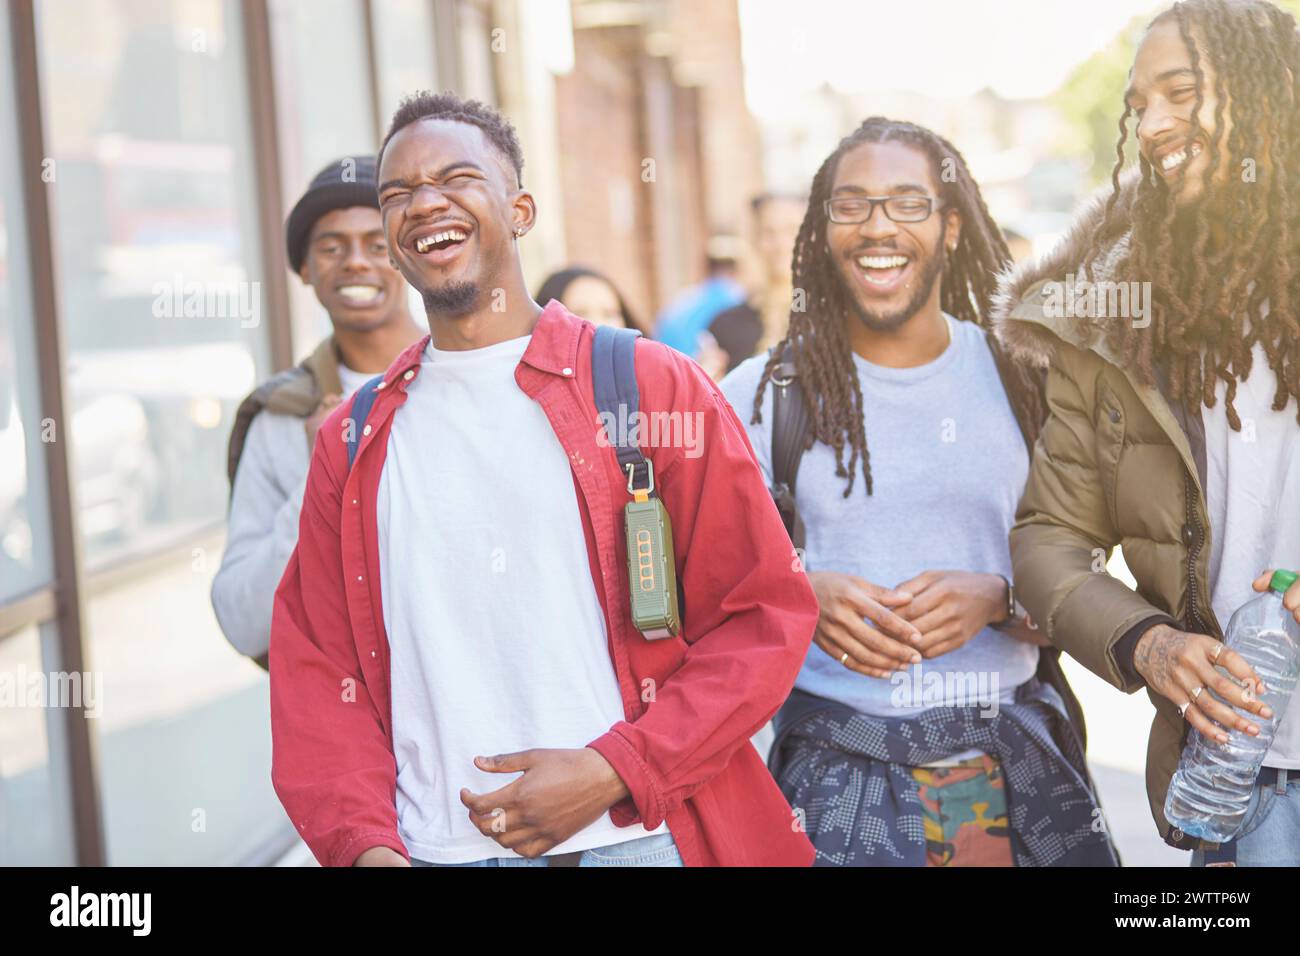 Gruppo di giovani amici felici che ridono in una strada cittadina Foto Stock